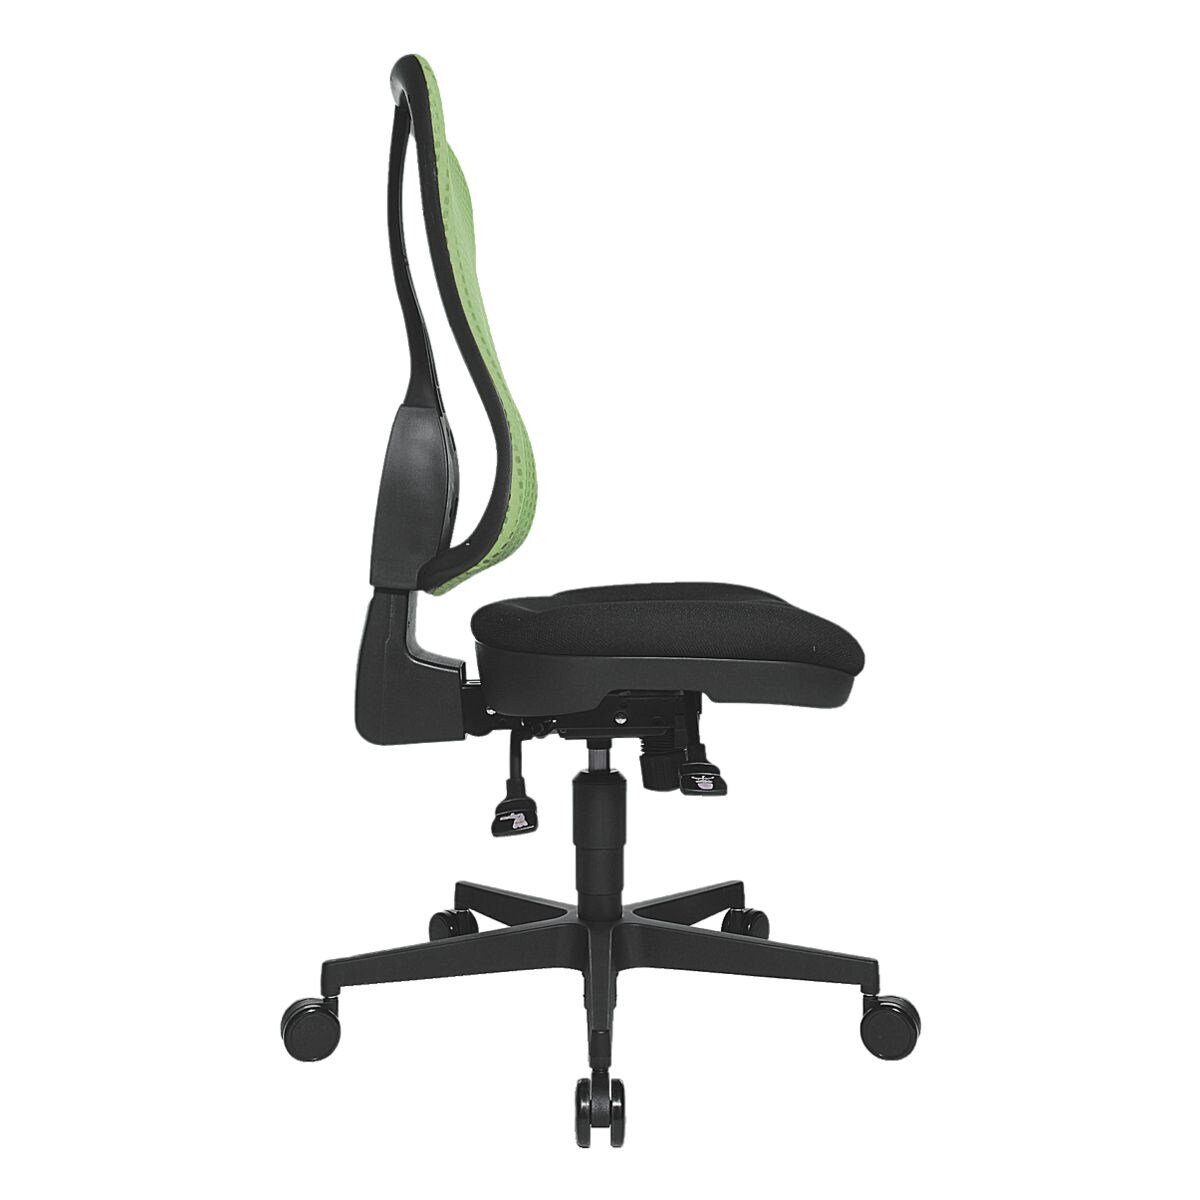 Muldensitz, Punkt-Synchronmechanik, Netzrückenlehne, TOPSTAR Schreibtischstuhl grün (ohne SY, Headpoint Armlehnen)